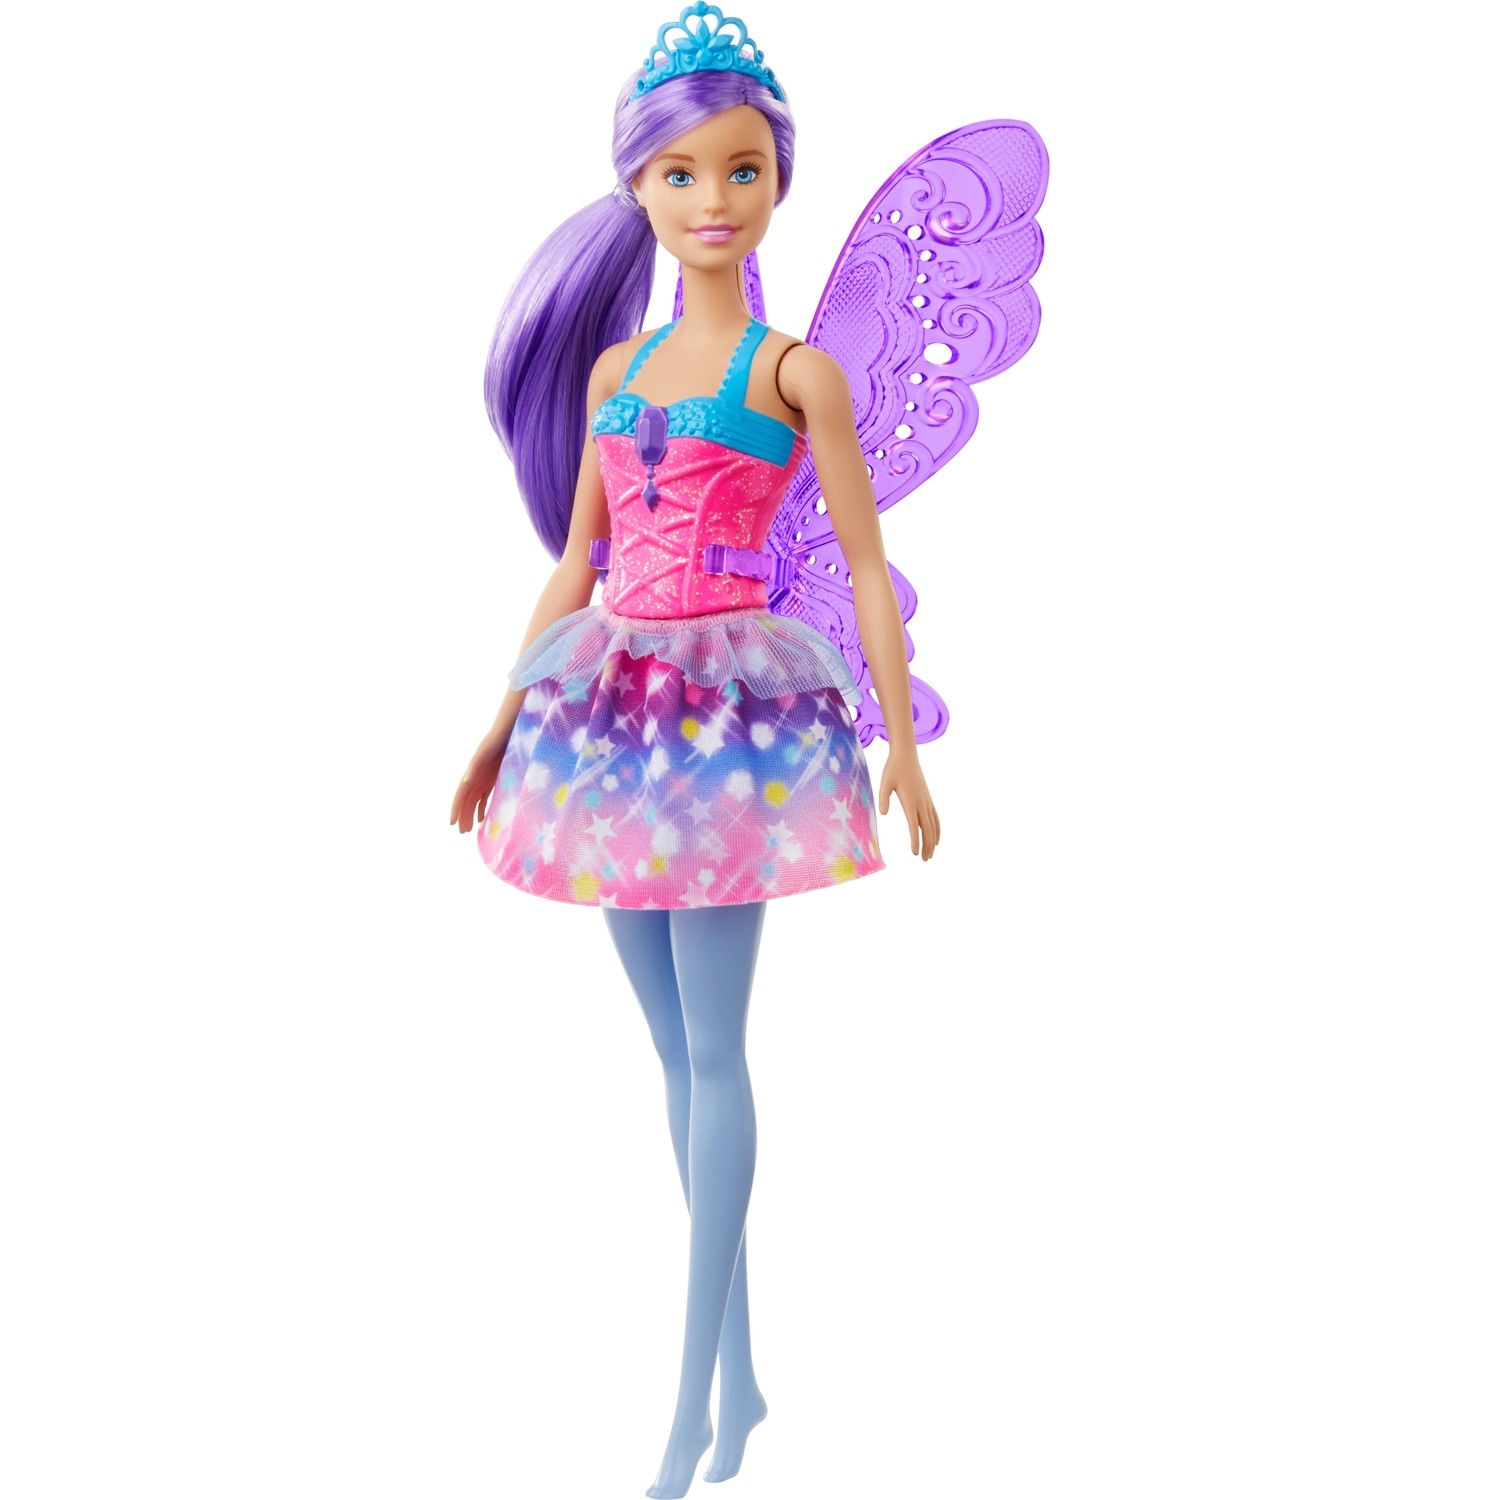 Куклы Barbie Dreamtopia Fairy Dolls Красочное розовое платье, фиолетовые волосы GJK00 чудо книга войди в волшебный мир 3d 100 стереокартинок